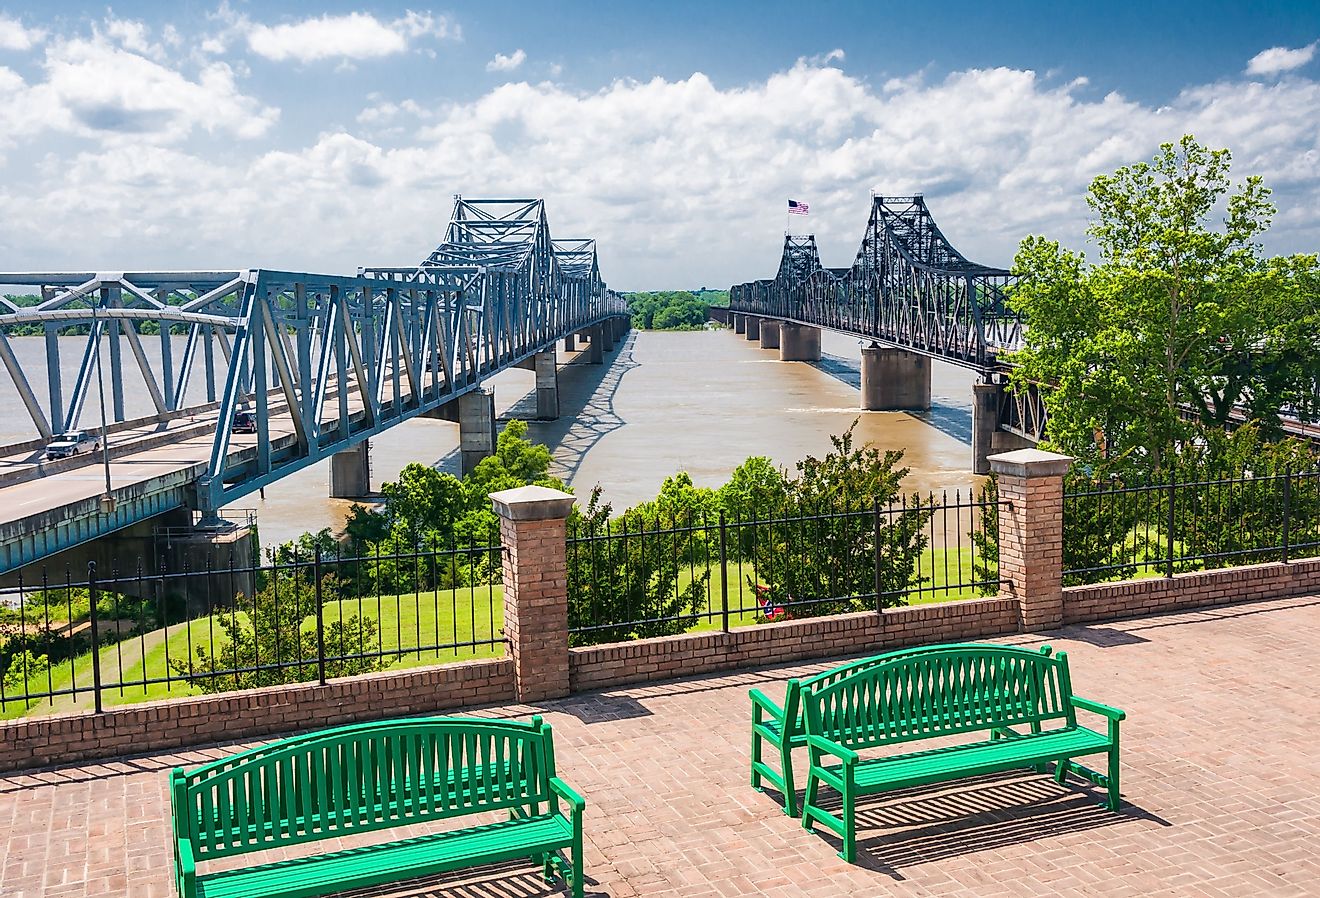 Mississippi River bridge, at Vicksburg, Mississippi.